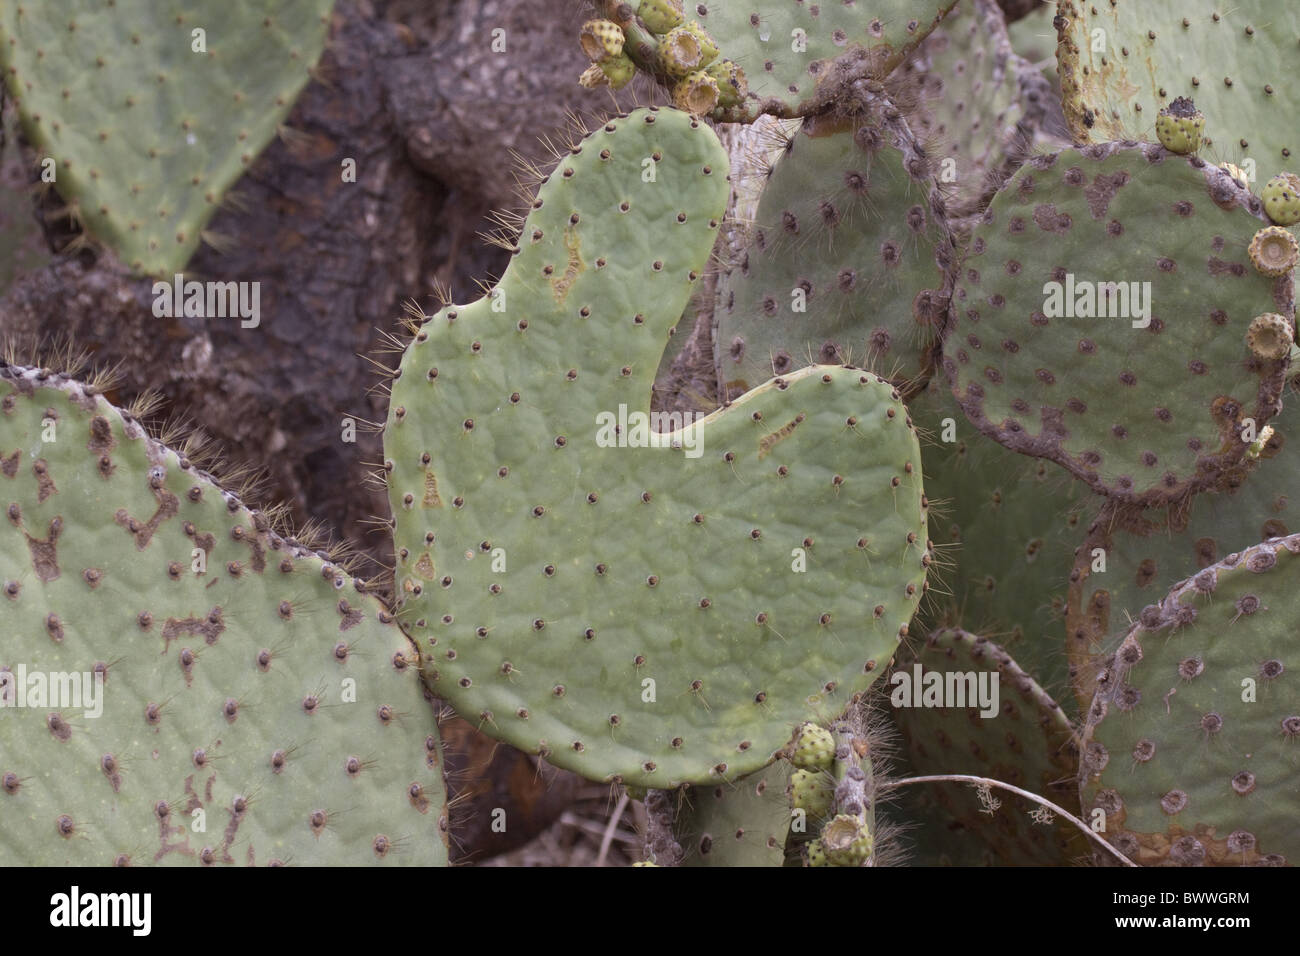 opuntia galapageia var profusa found Rabida Stock Photo